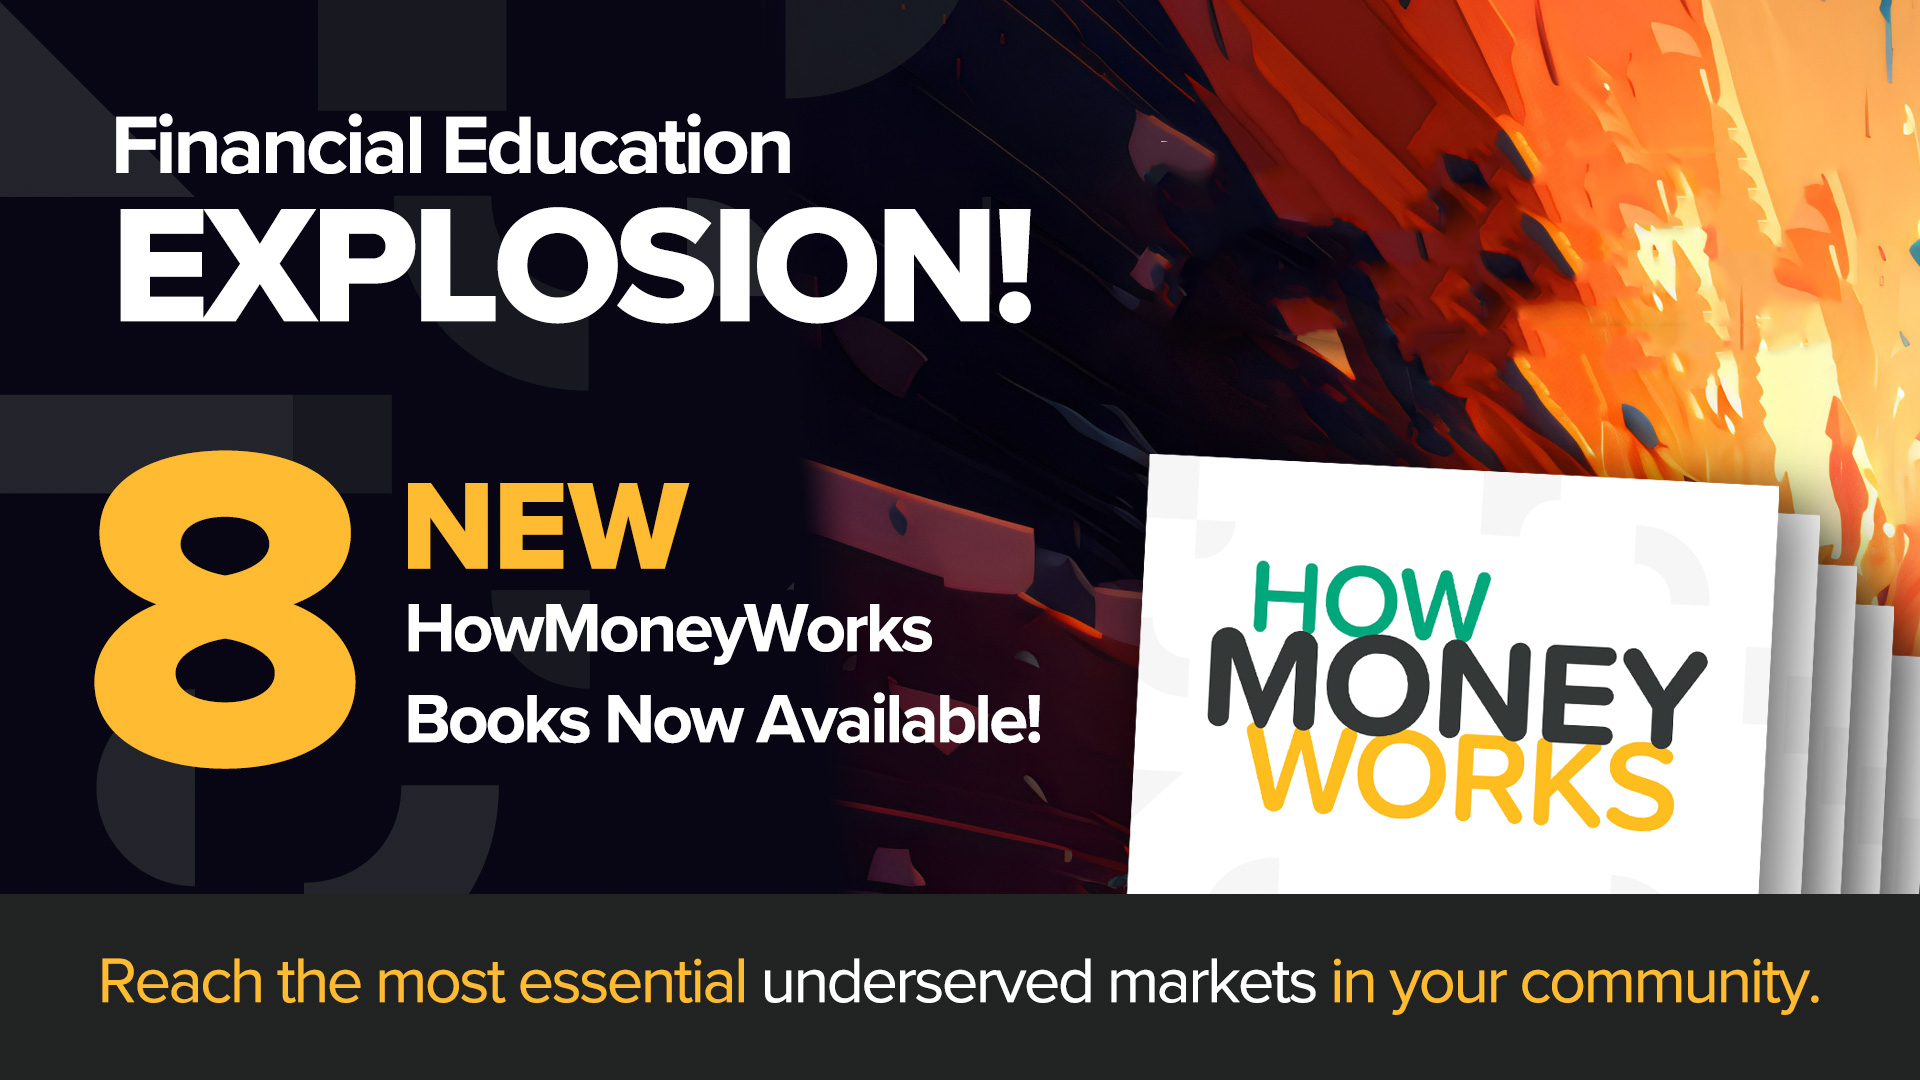 8 neue HowMoneyWorks-Bücher - Heute stellen wir eine vielfältige neue Reihe von Büchern zur finanziellen Bildung vor